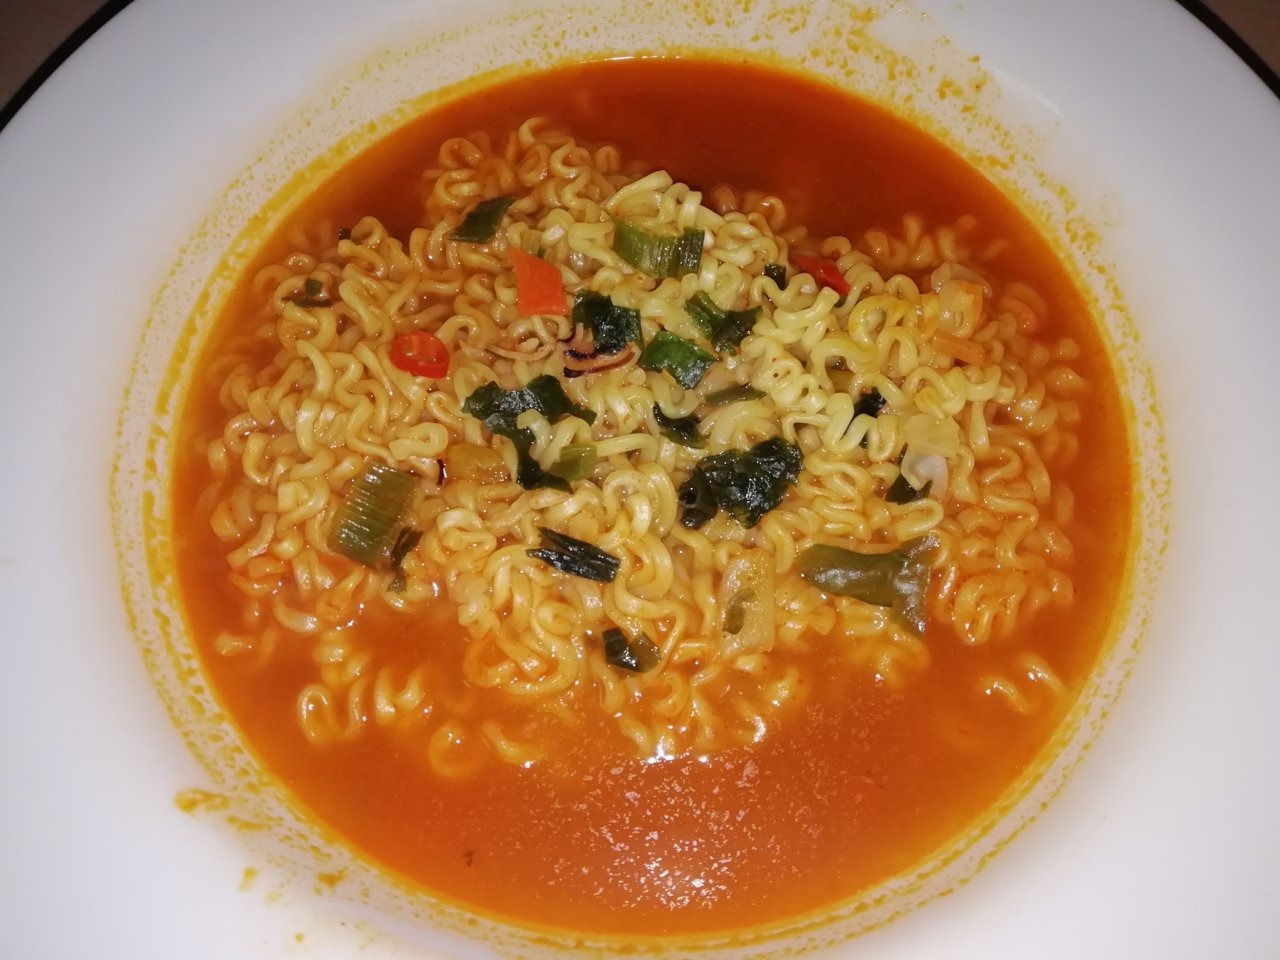 #1571: Paldo "Spicy Seafood Flavor Noodle"